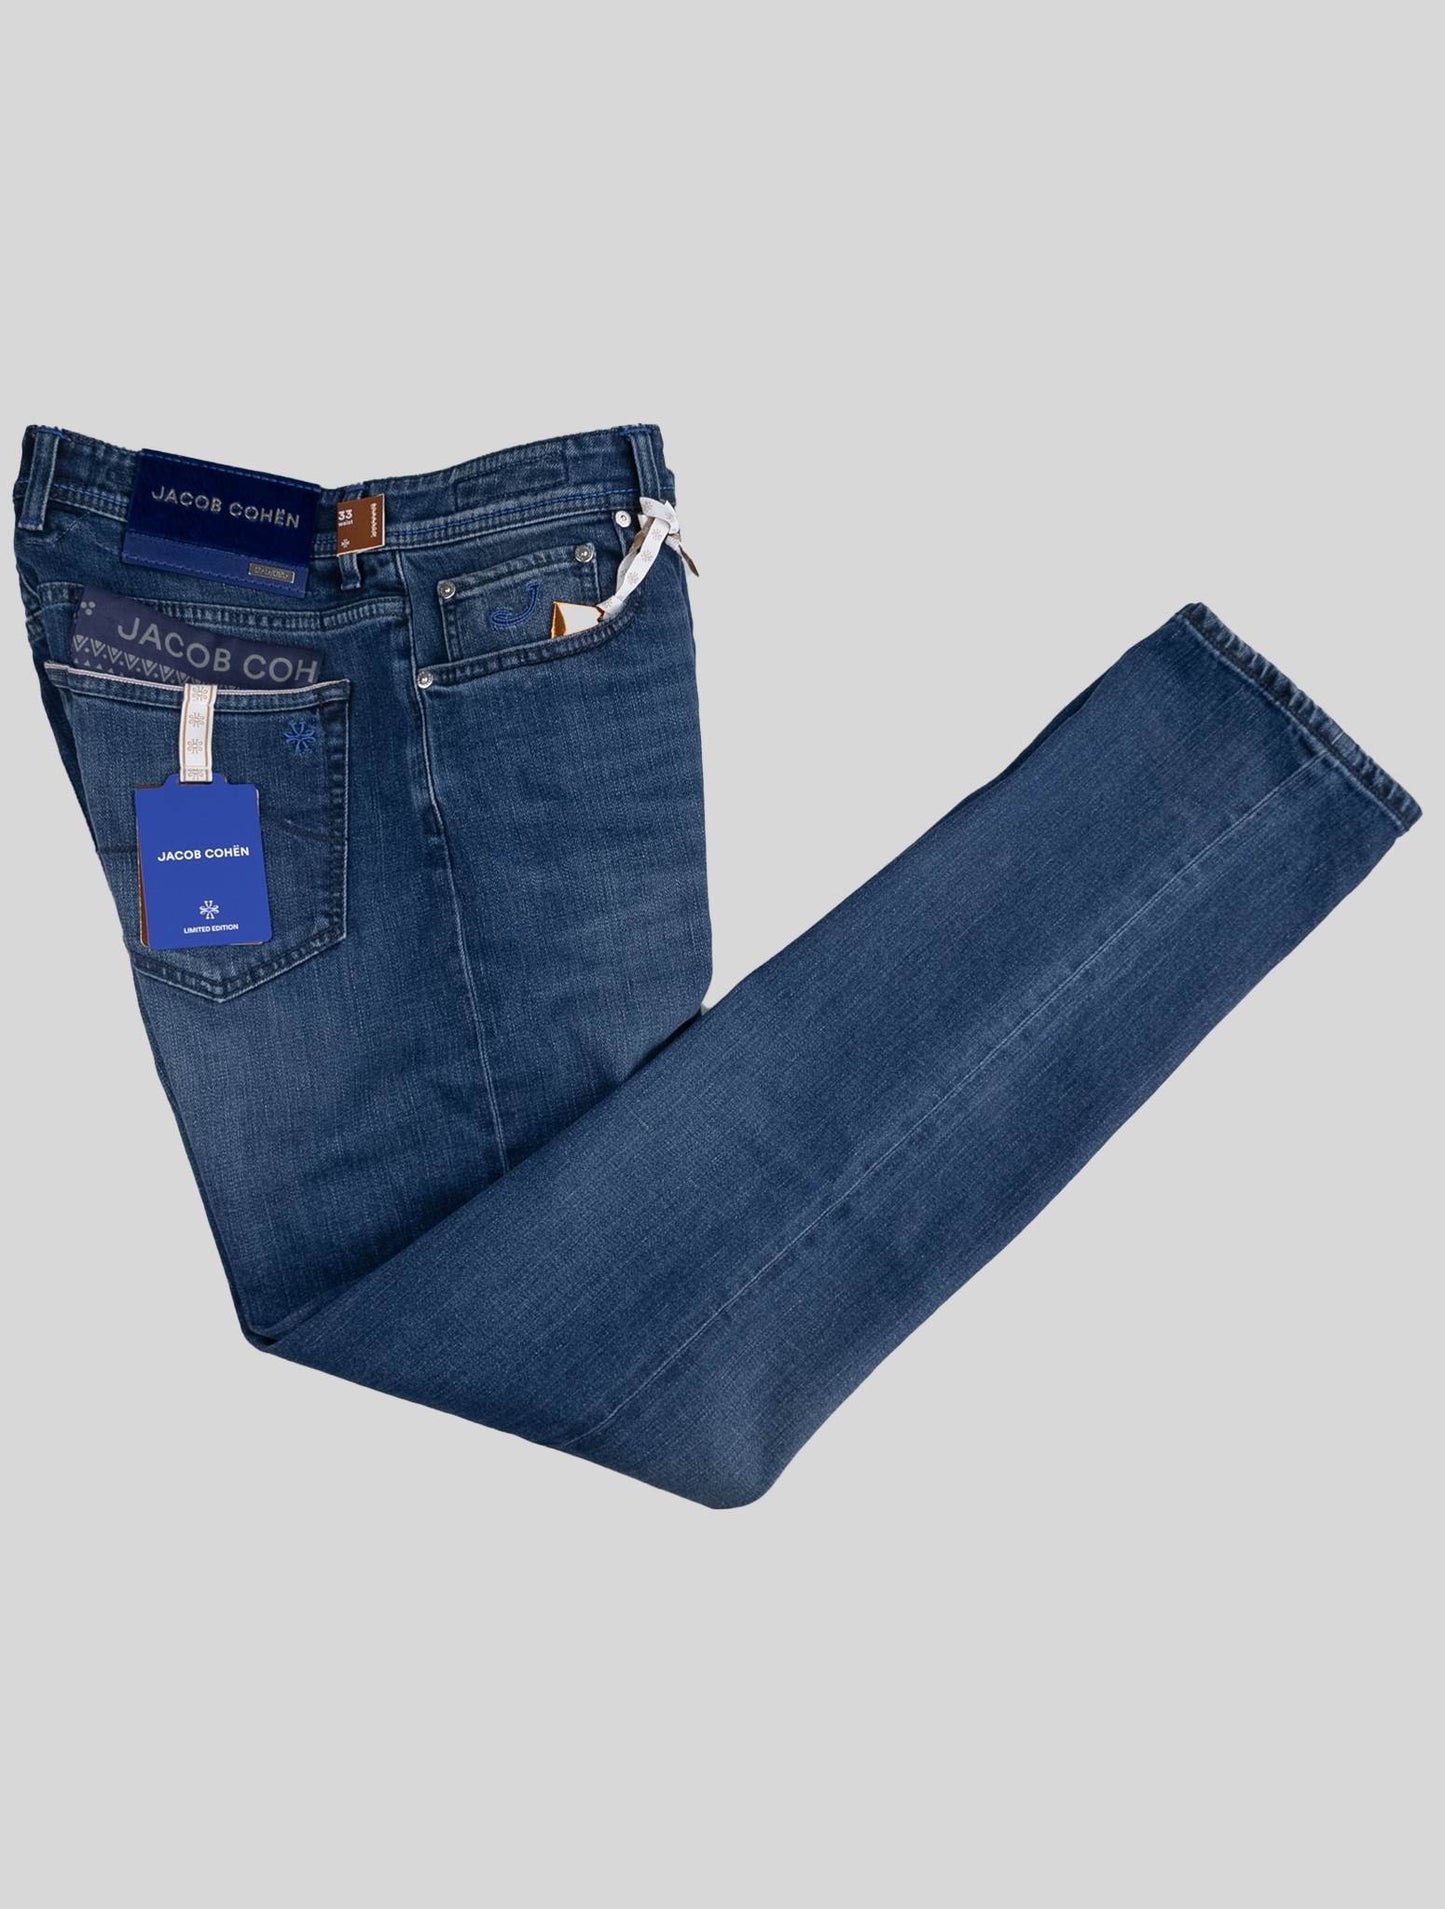 Jacob Cohen Blue Cotton Pl Ea Jeans Limited Edition